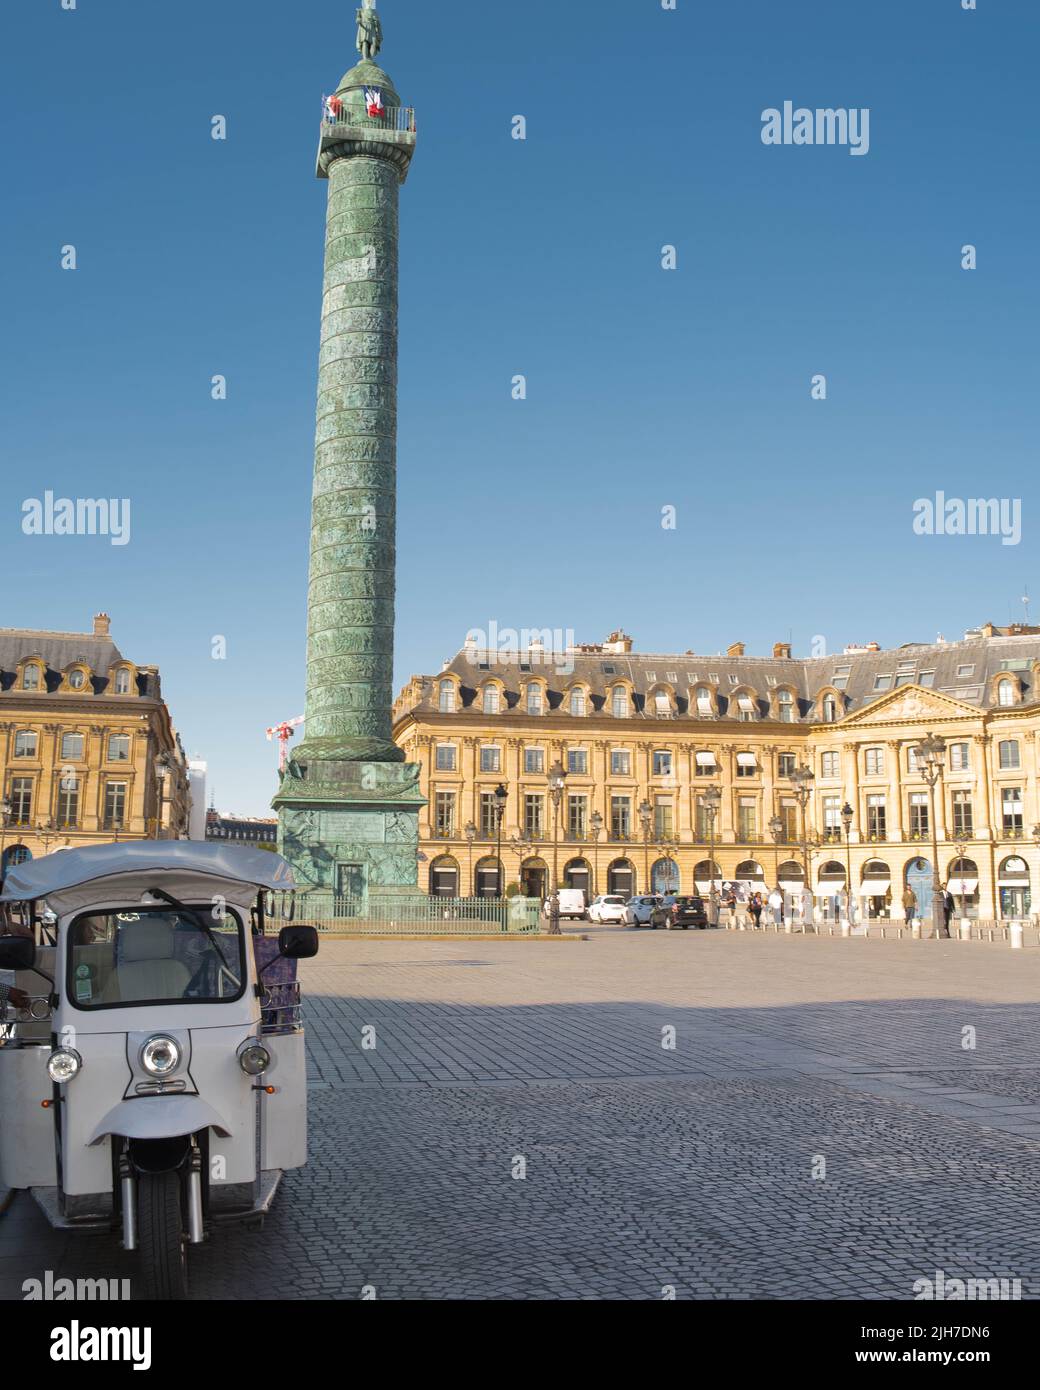 Colonne Vendôme, monument parisien situé au centre de la place du même nom à Paris 75001 France. Stock Photo